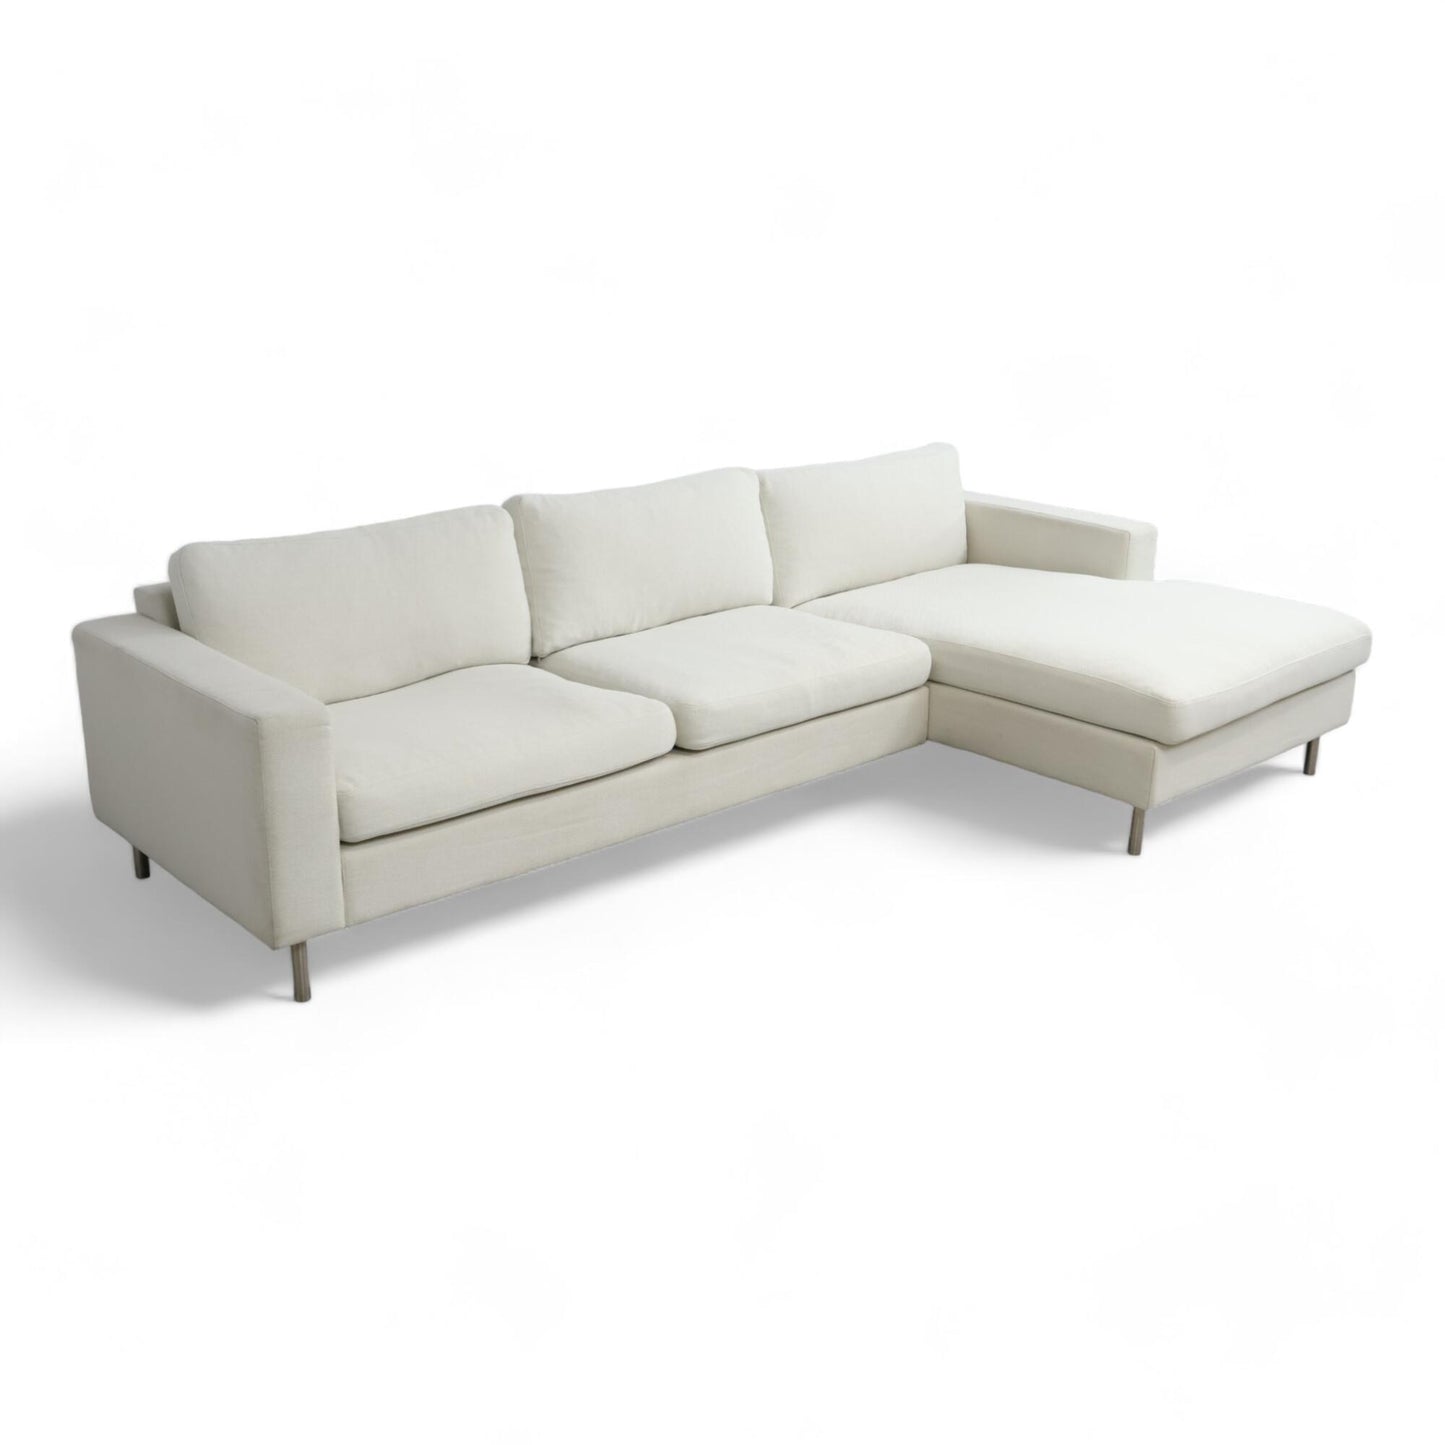 Nyrenset | Off white Bolia Scandinavia sofa med sjeselong